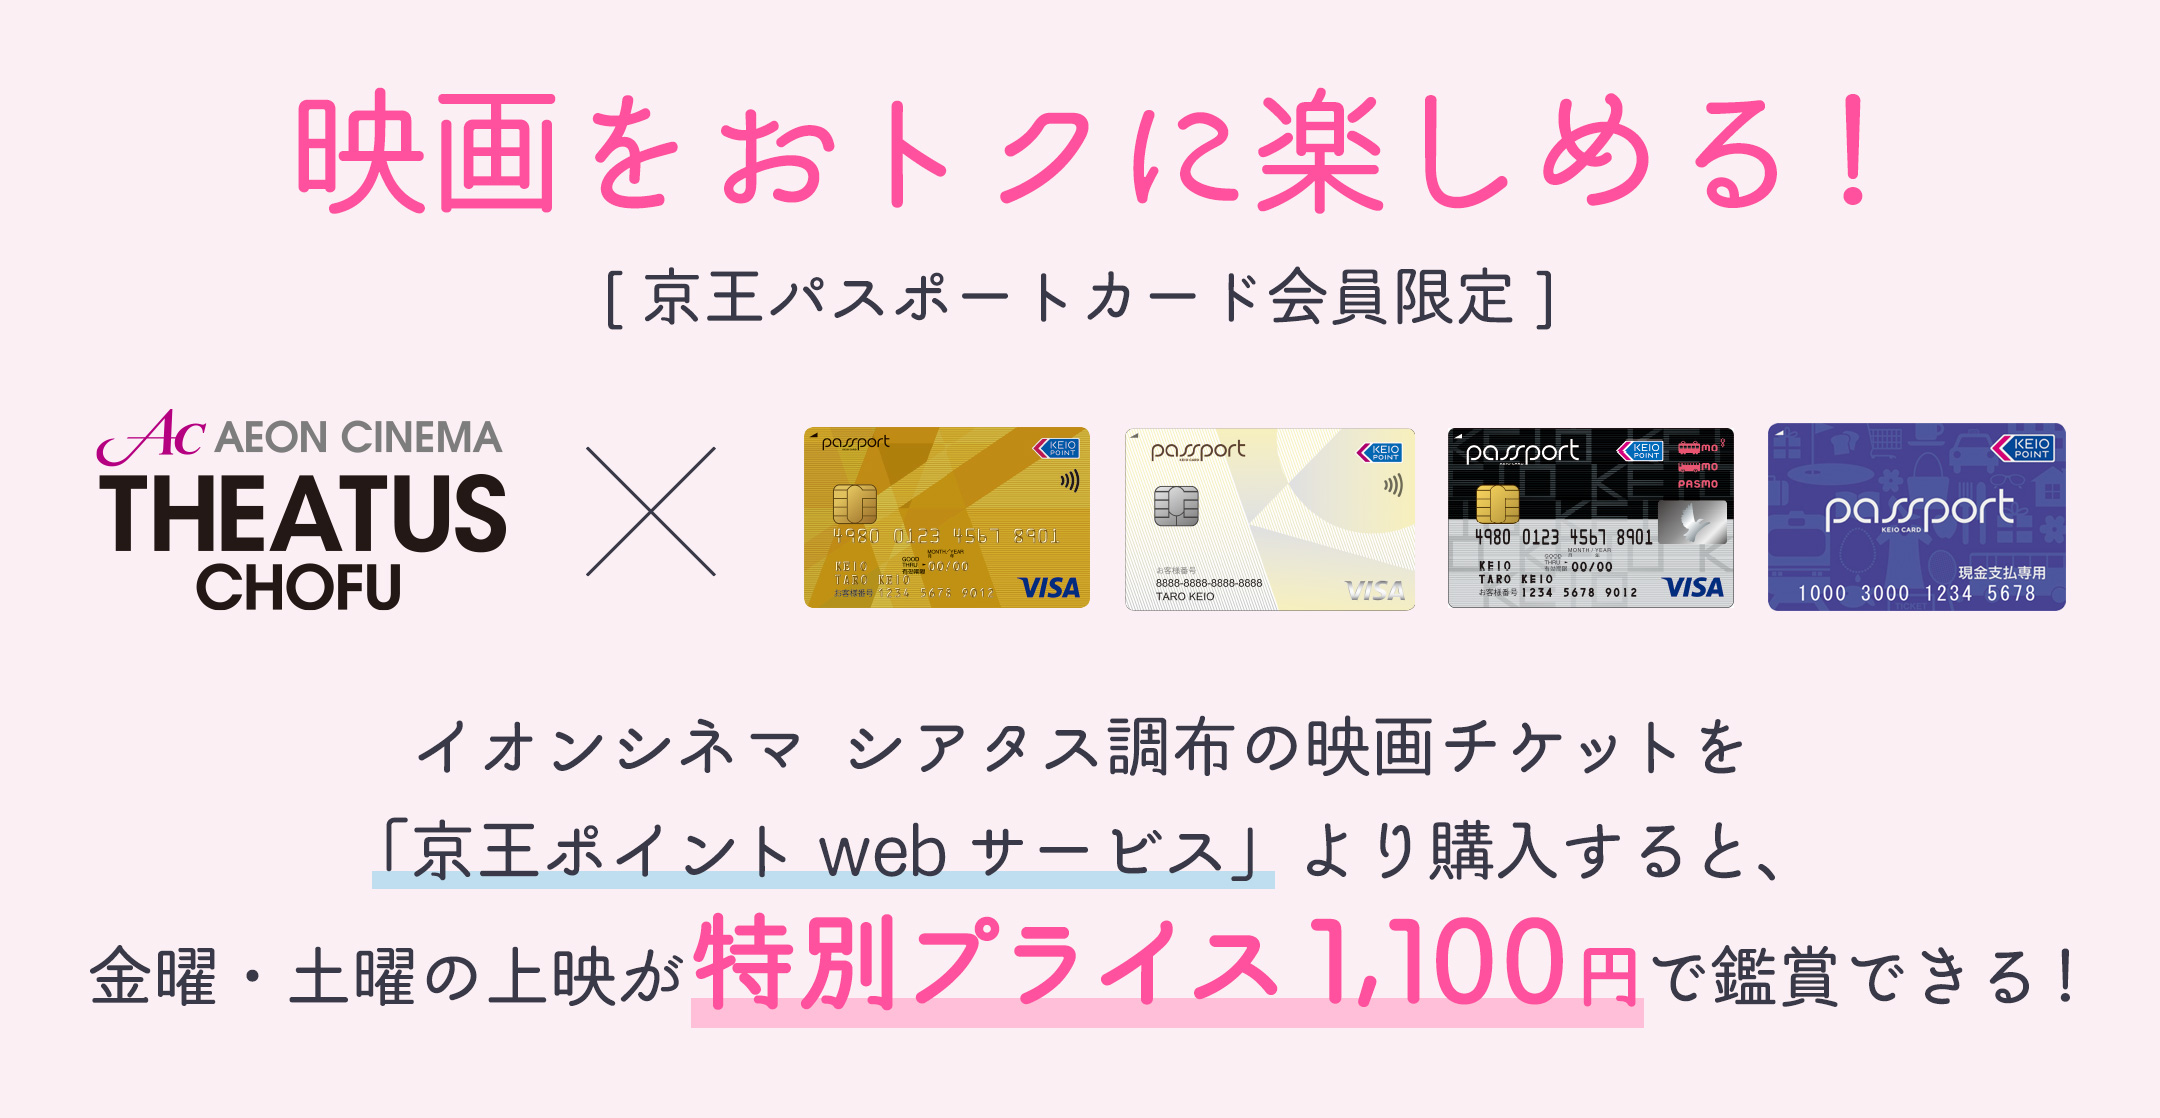 京王パスポート会員限定でイオンシネマ シアタス調布のチケットがおトクに買える！